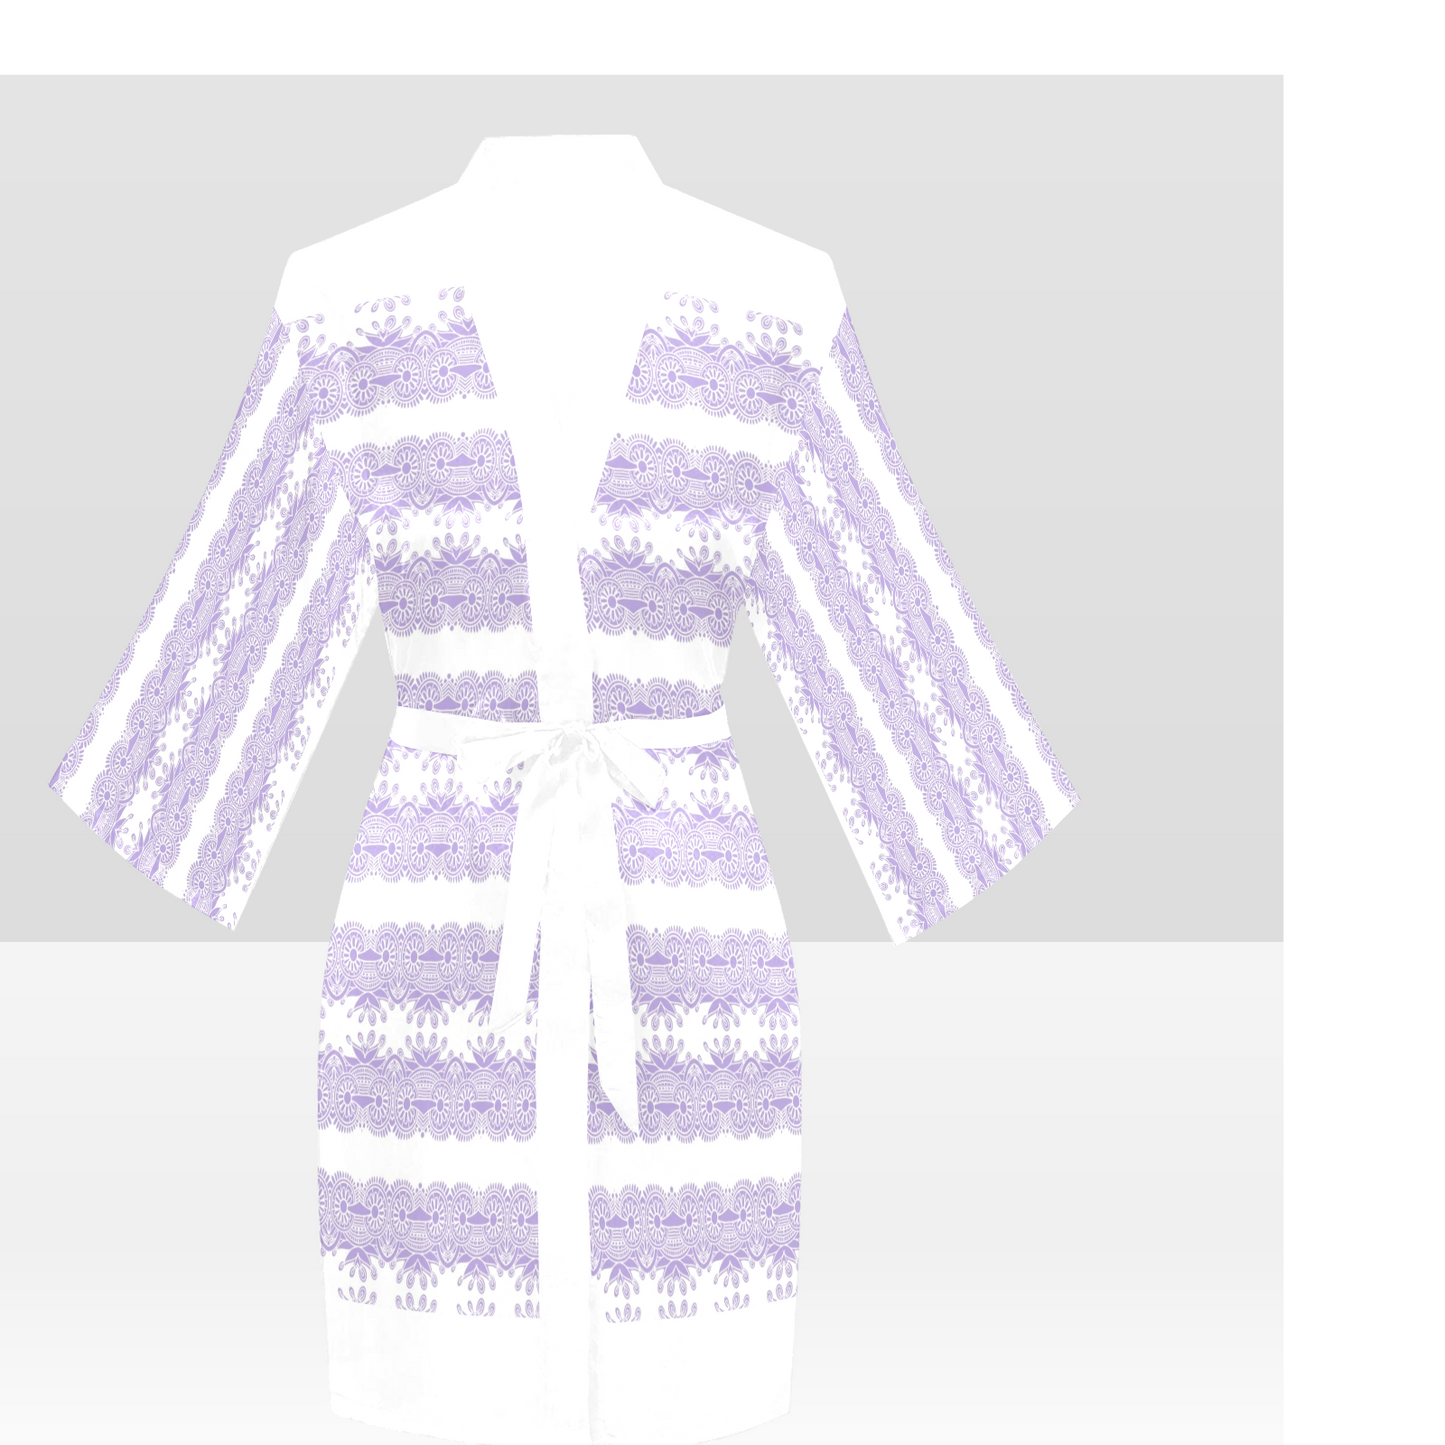 Victorian Lace Kimono Robe, Black or White Trim, Sizes XS to 2XL, Design 07